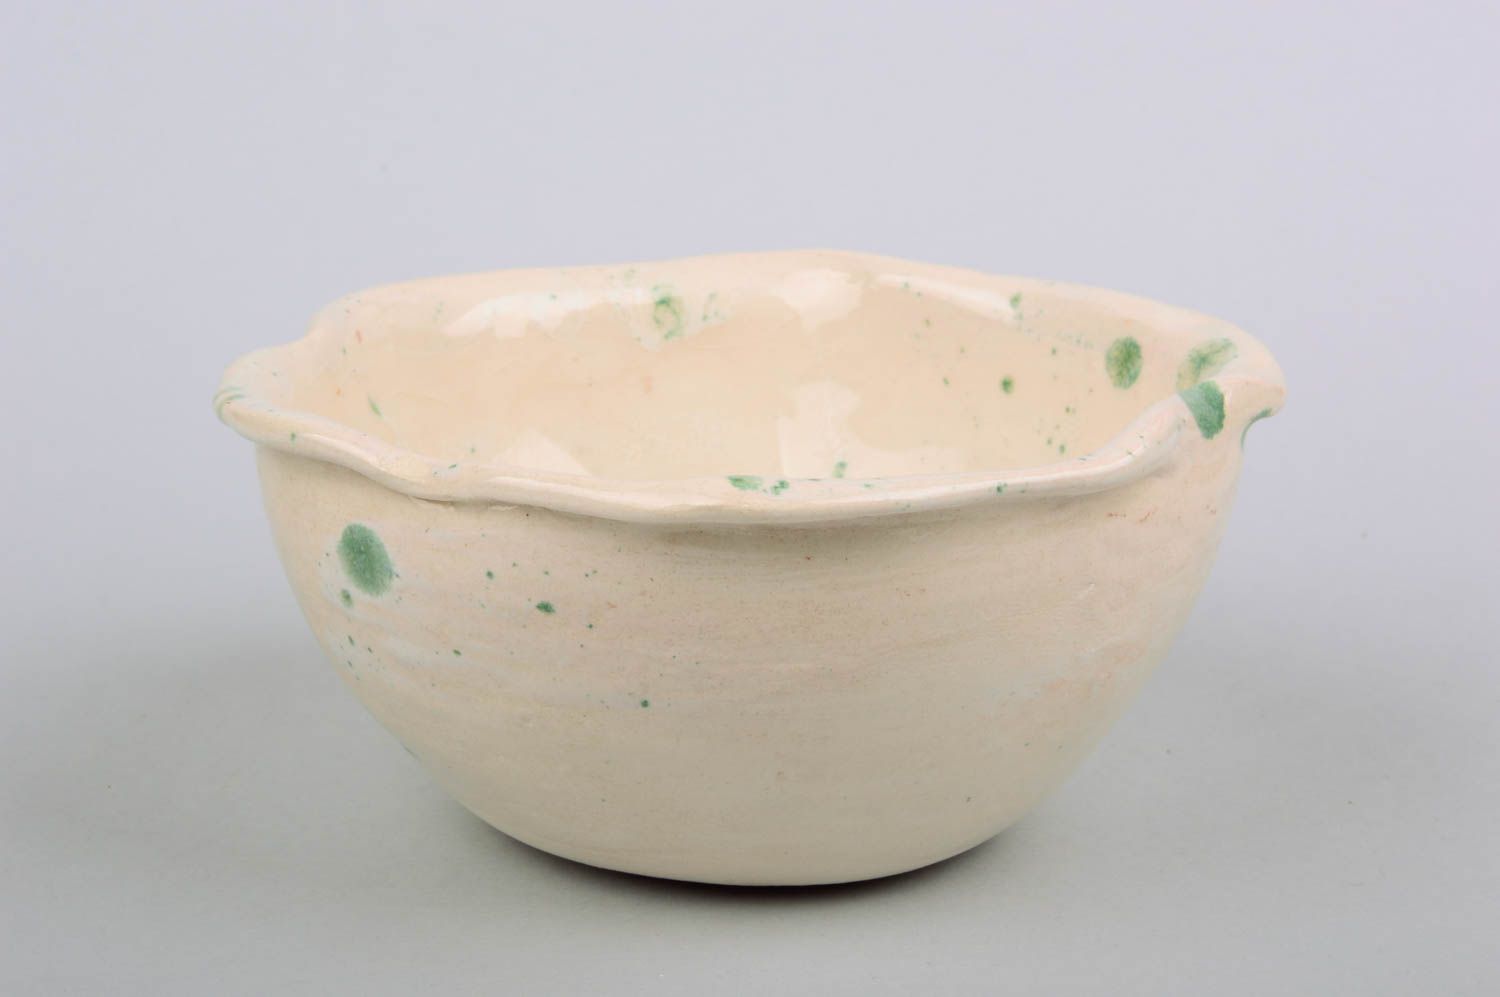 Small homemade ceramic bowl designer clay bowl designer ceramics gift ideas photo 1